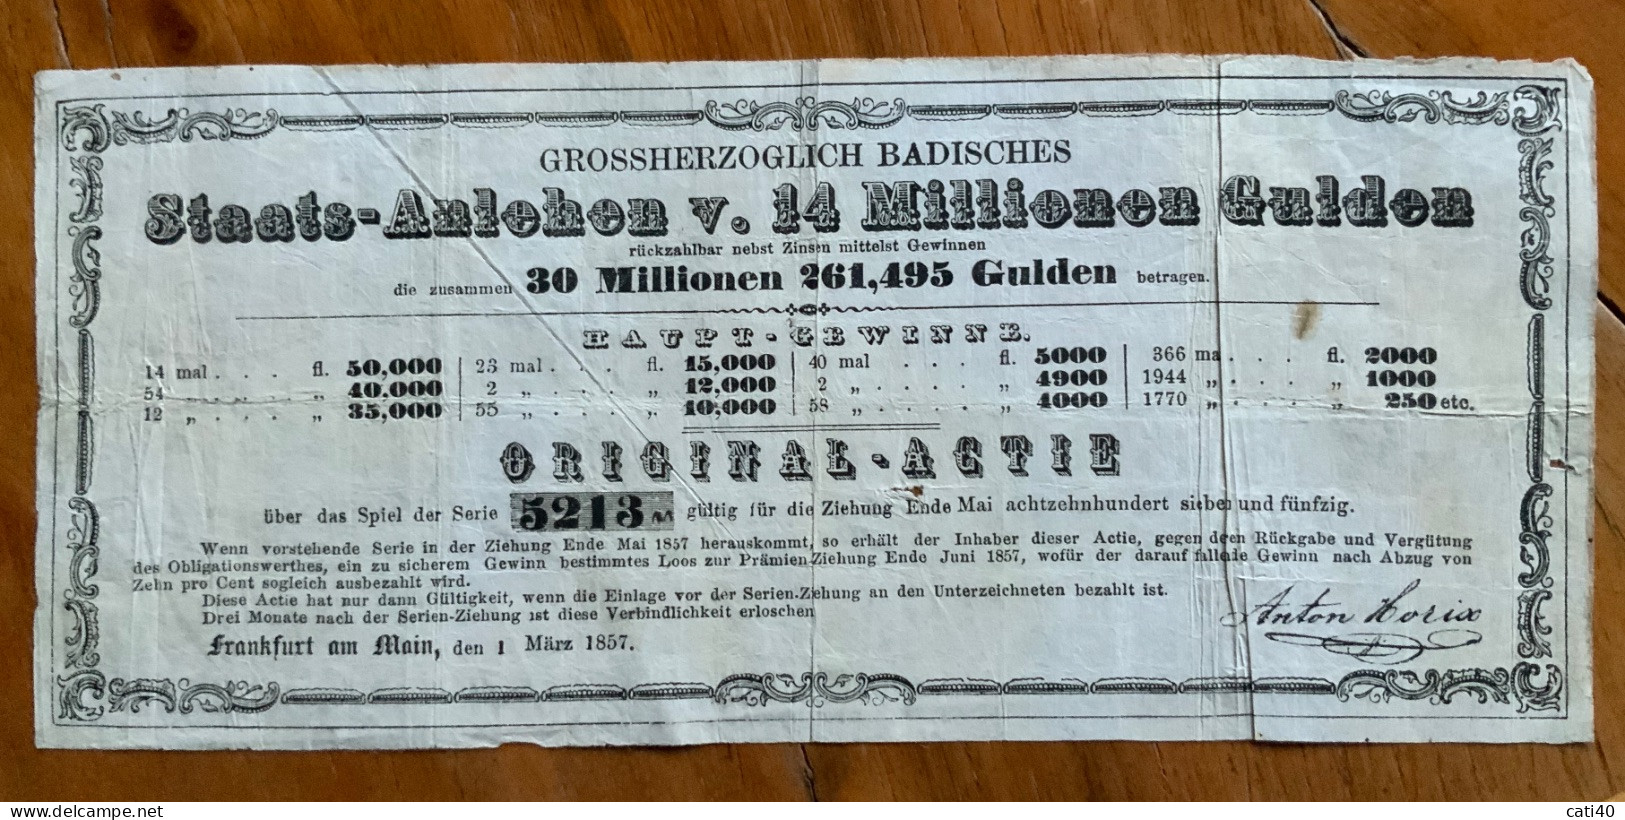 FRANKFURT AM MAIN 1 MARZ 1857 - GROSSHERZOGLICH BADISCHES -  STAATS - ANLEHEN ORIGINAL - ACTIE - 14 MILIONEN GULDEN - Transporte